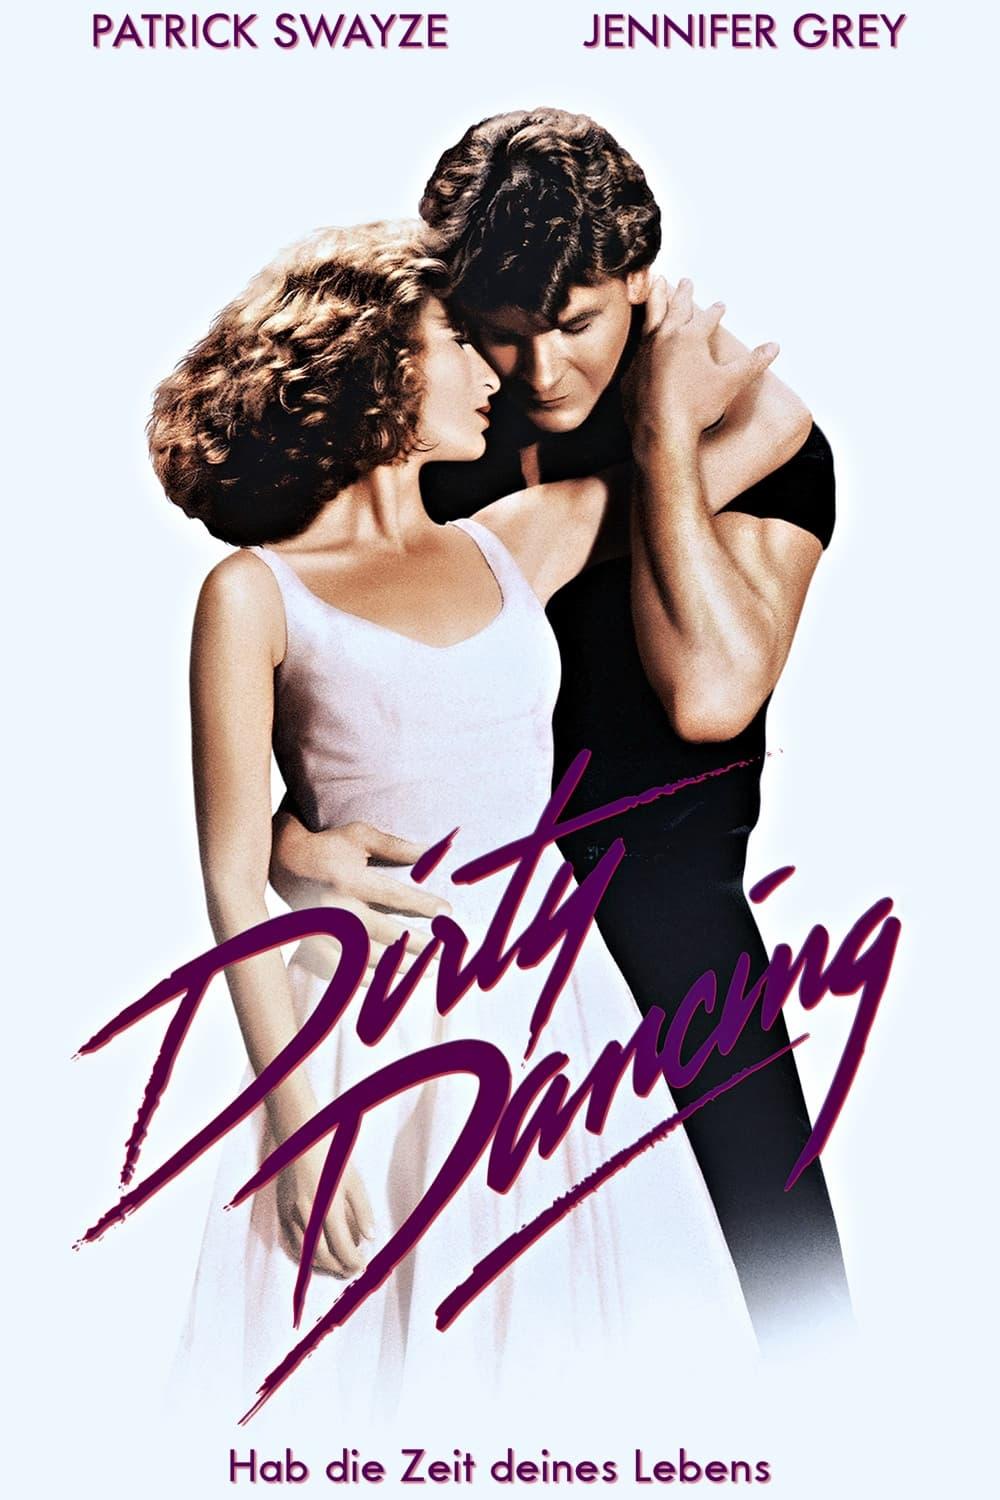 Dirty Dancing poster